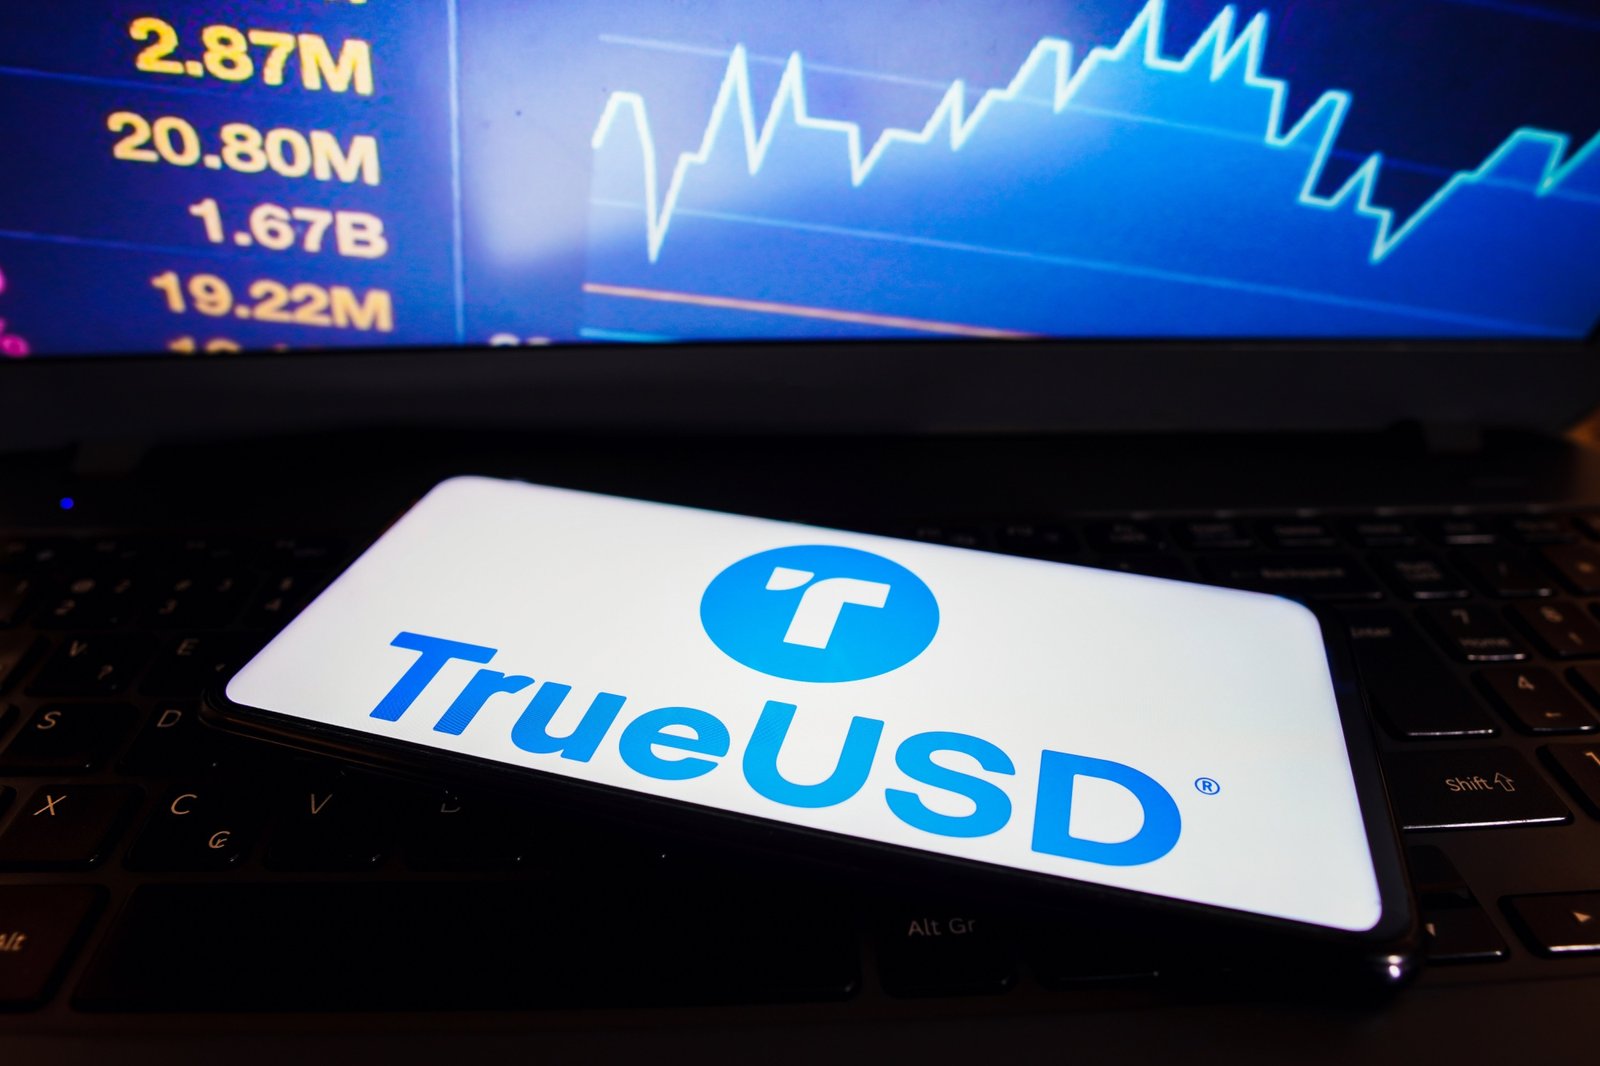 TUSD pierde paritatea cu dolarul, se tranzacționează la $0,98